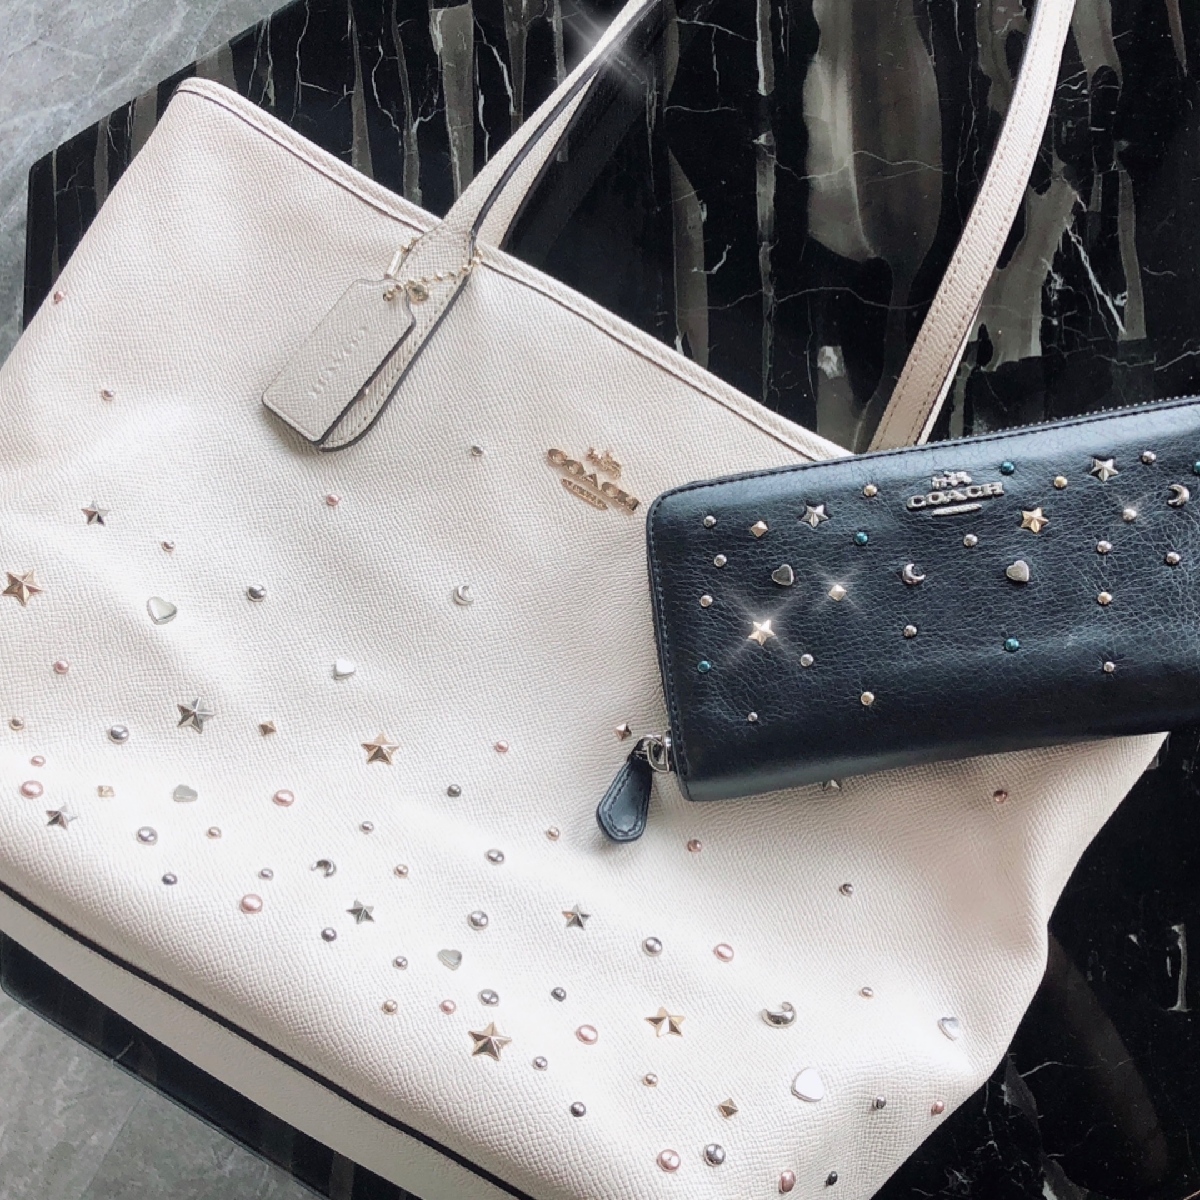 【アラサー女子の愛用財布】星空みたいなキラキラスタッズがポイント⭐︎。同じデザインのバッグと一緒に♡Coachの長財布